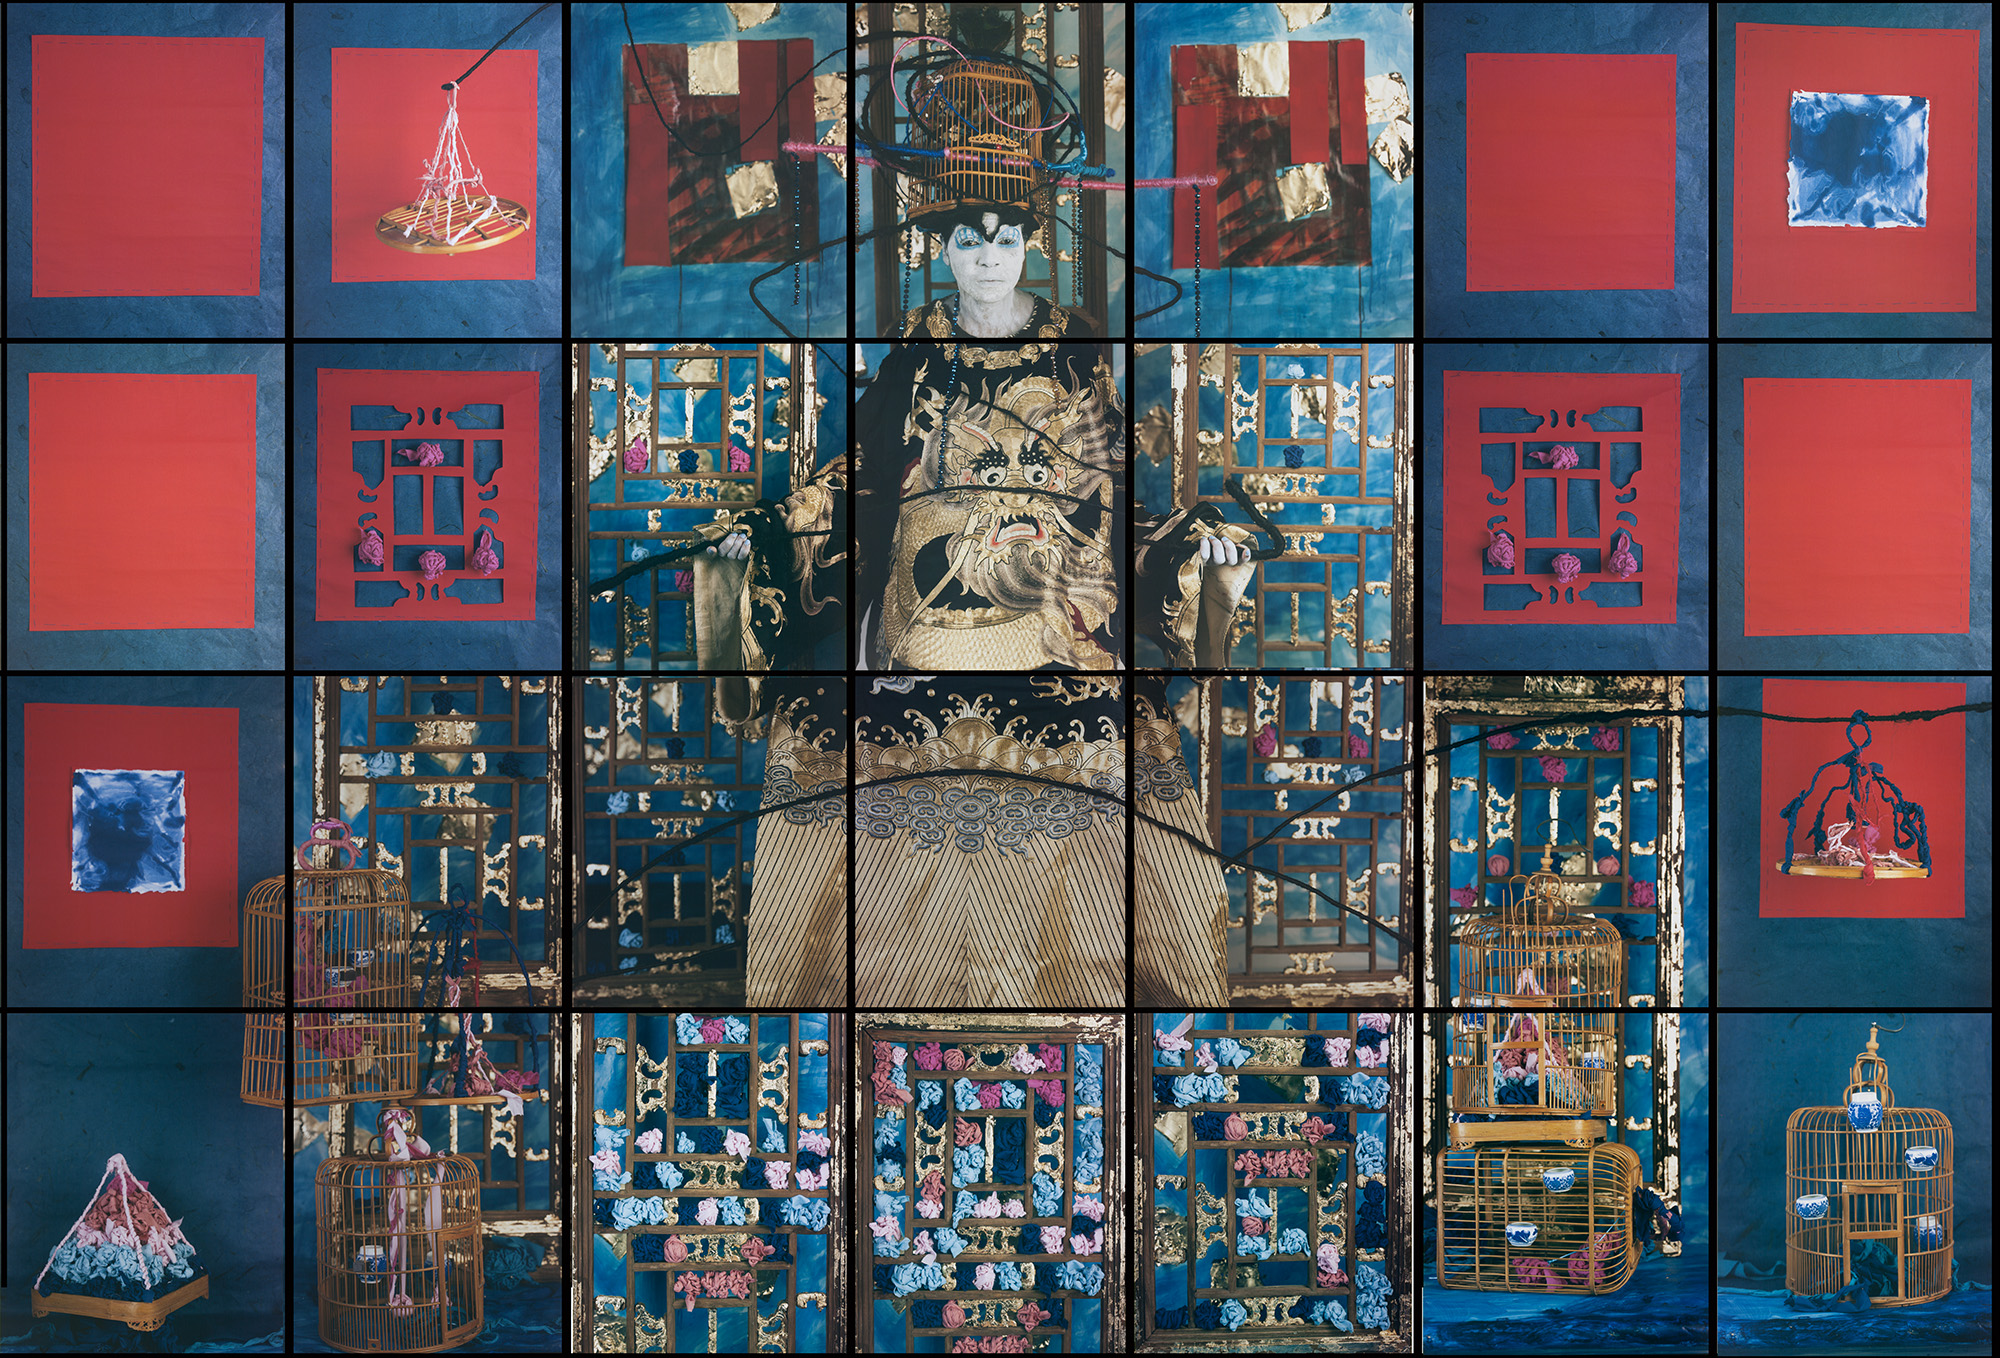  María Magdalena Campos-Pons,  Finding Balance,  2015, Composition of 28, Polaroid Polacolor, Pro 24 x 20 photograph, 96 x 140 inches (243.8 x 355.6 cm) 